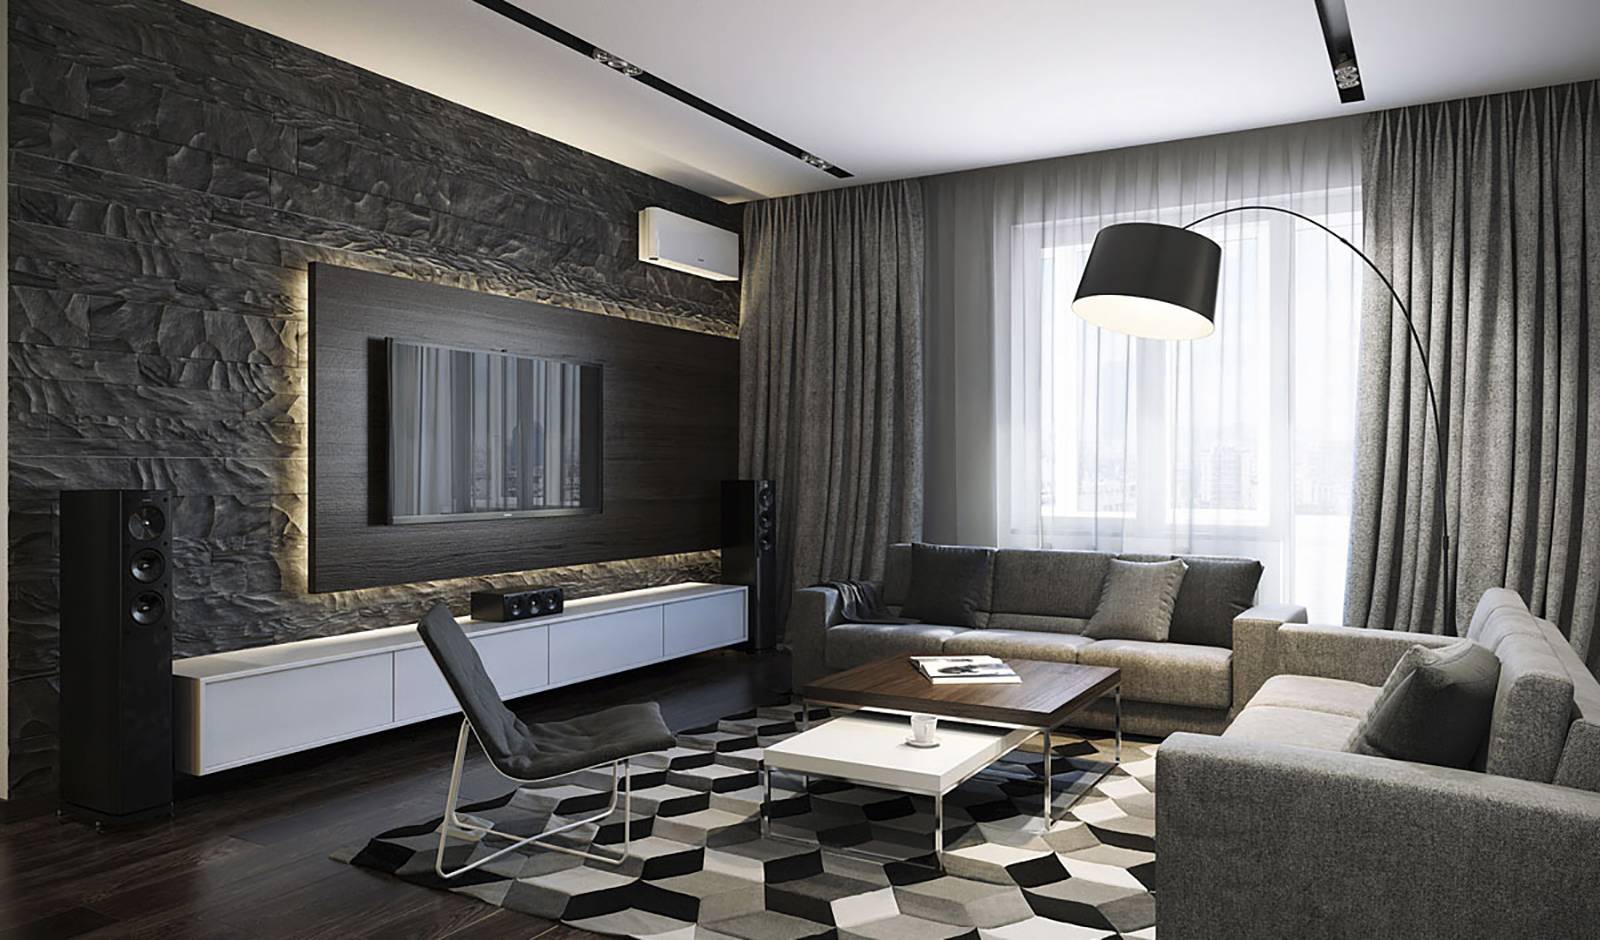 Дизайн обоев 2022 года — красивые и современные варианты для интерьера. фото примеров удачного сочетания. комбинированный дизайн комнаты с обоями